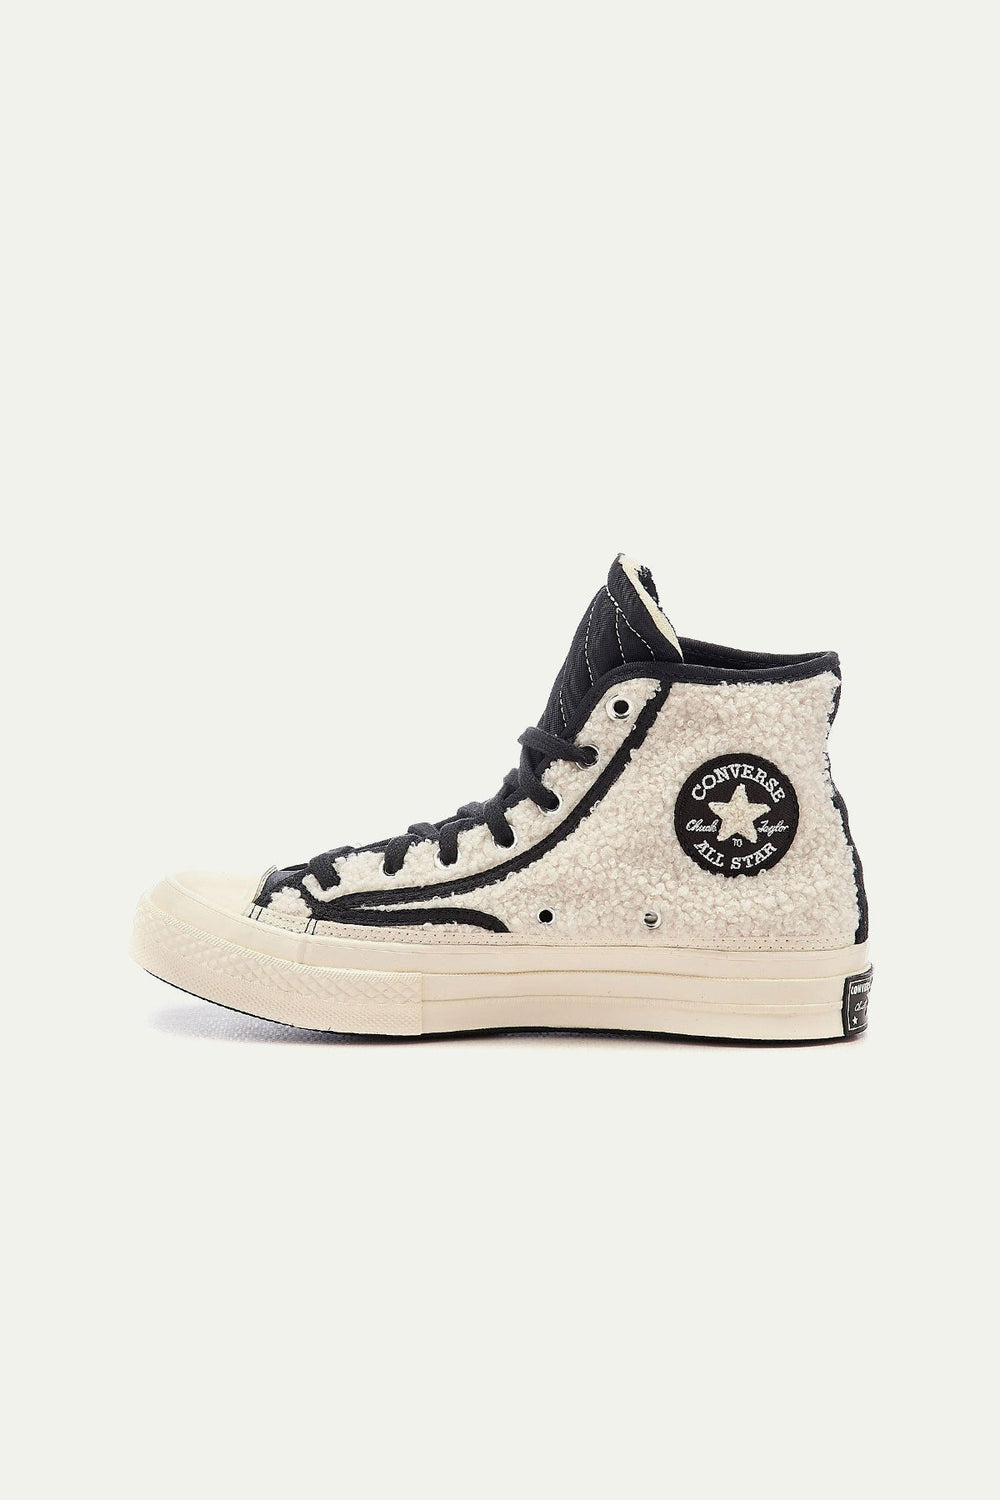 נעלי CHUCK 70 פרוותיות בצבע לבן - Converse